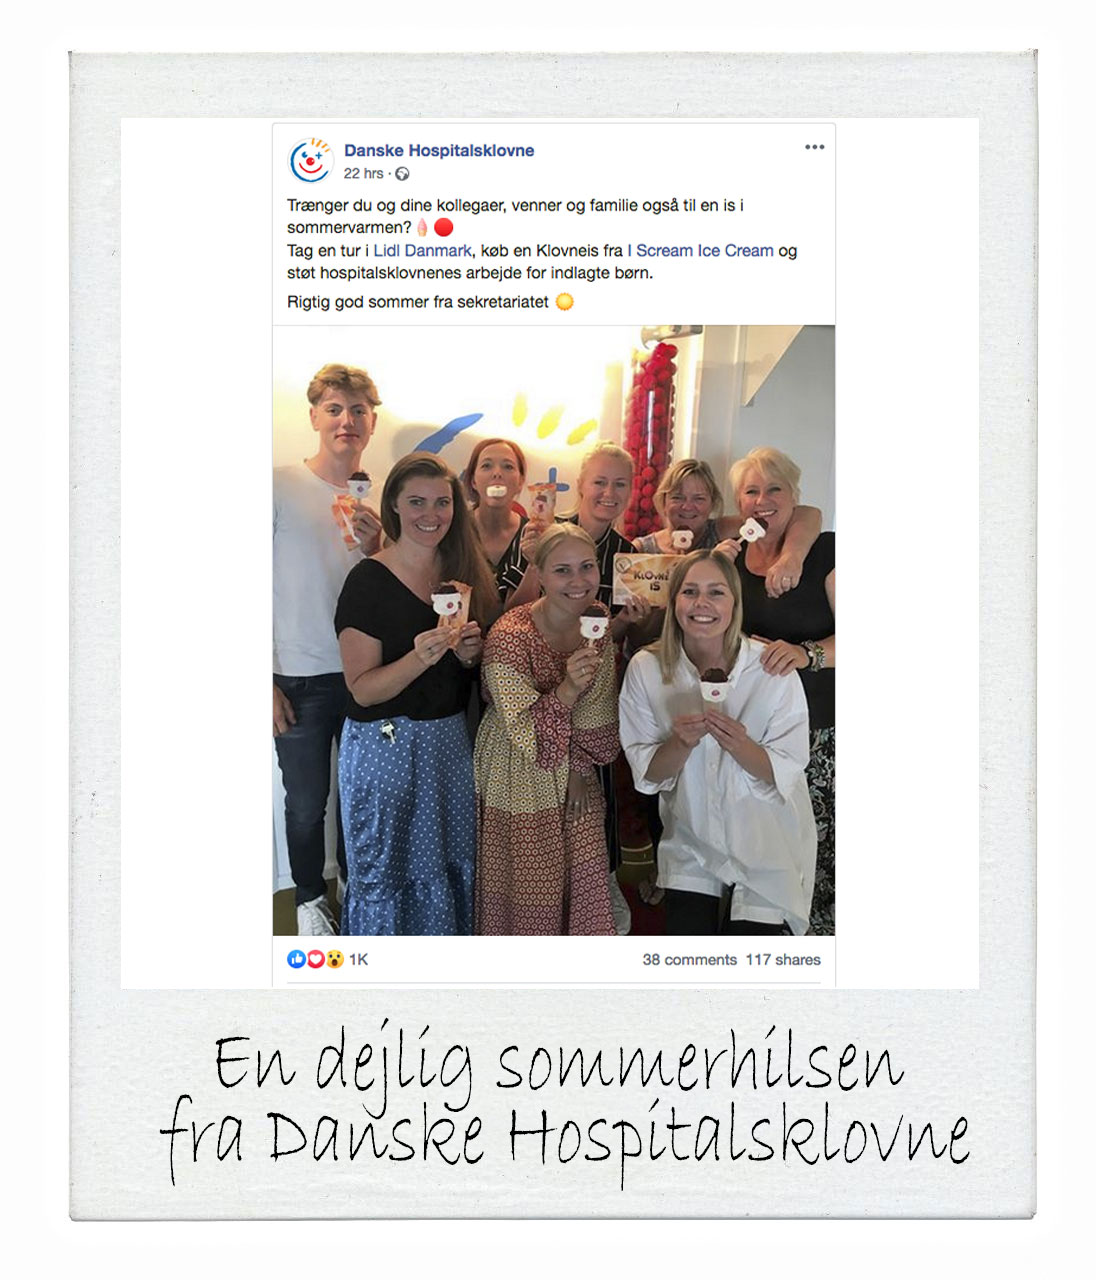 https://iscreamicecream.dk/wp-content/uploads/2020/06/Danske_Hospitalsklovne_FB_Polaorid_skilt.jpg